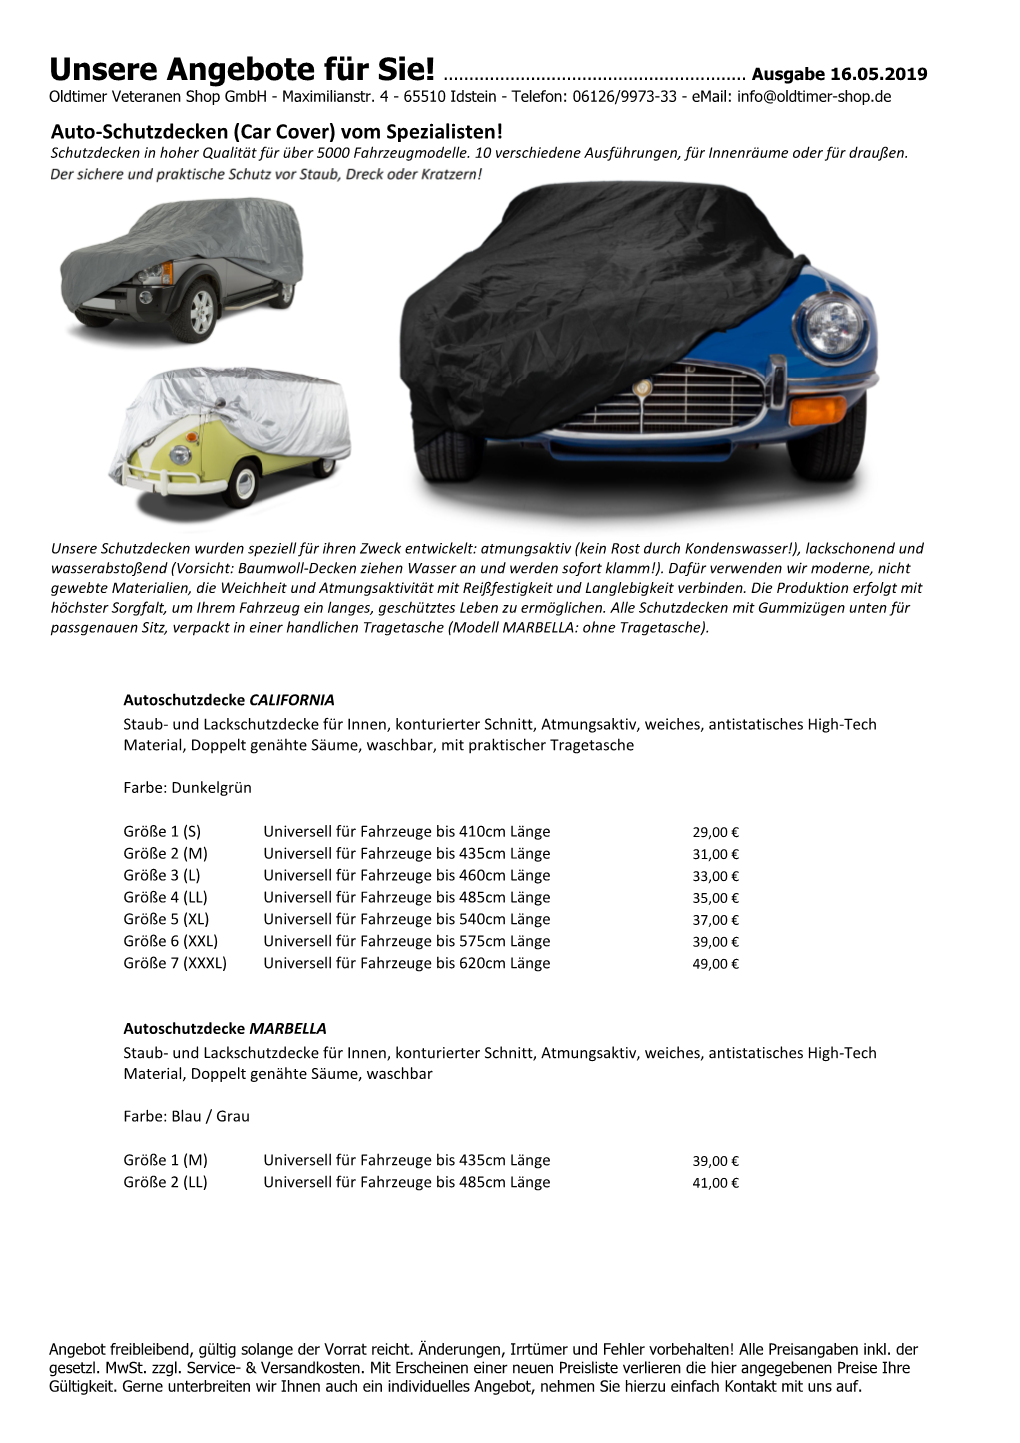 Car Cover) Vom Spezialisten! Schutzdecken in Hoher Qualität Für Über 5000 Fahrzeugmodelle